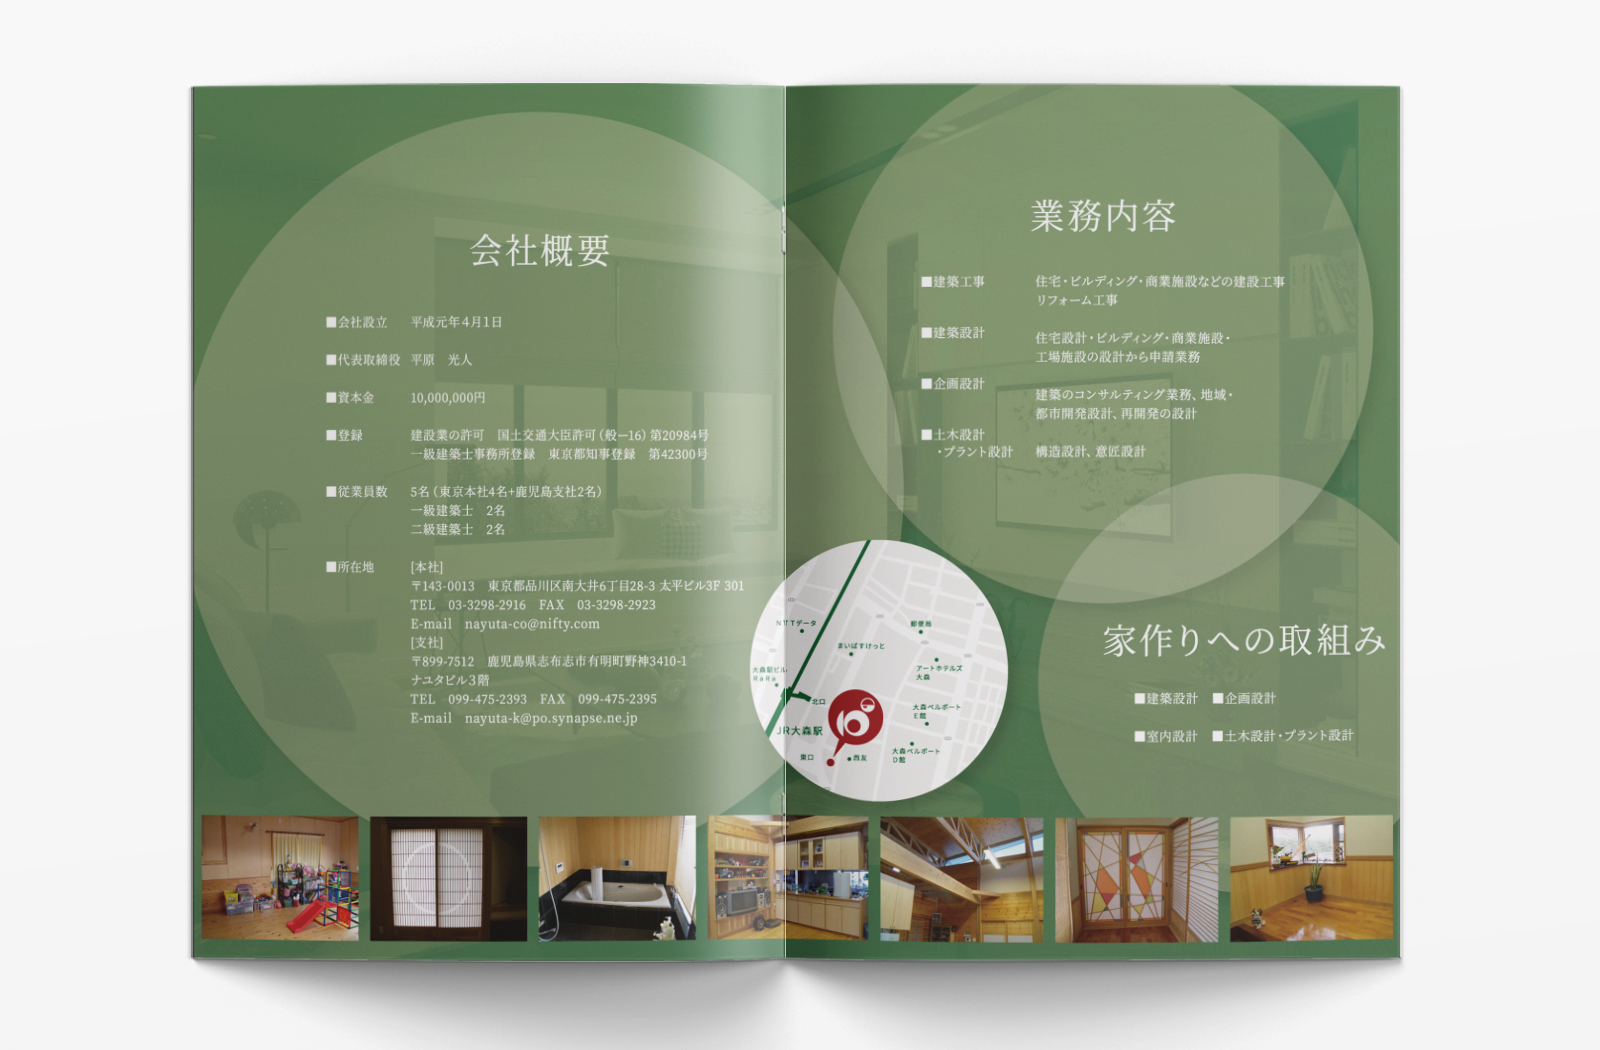 ナユタ一級建築士事務所様のパンフレットデザイン